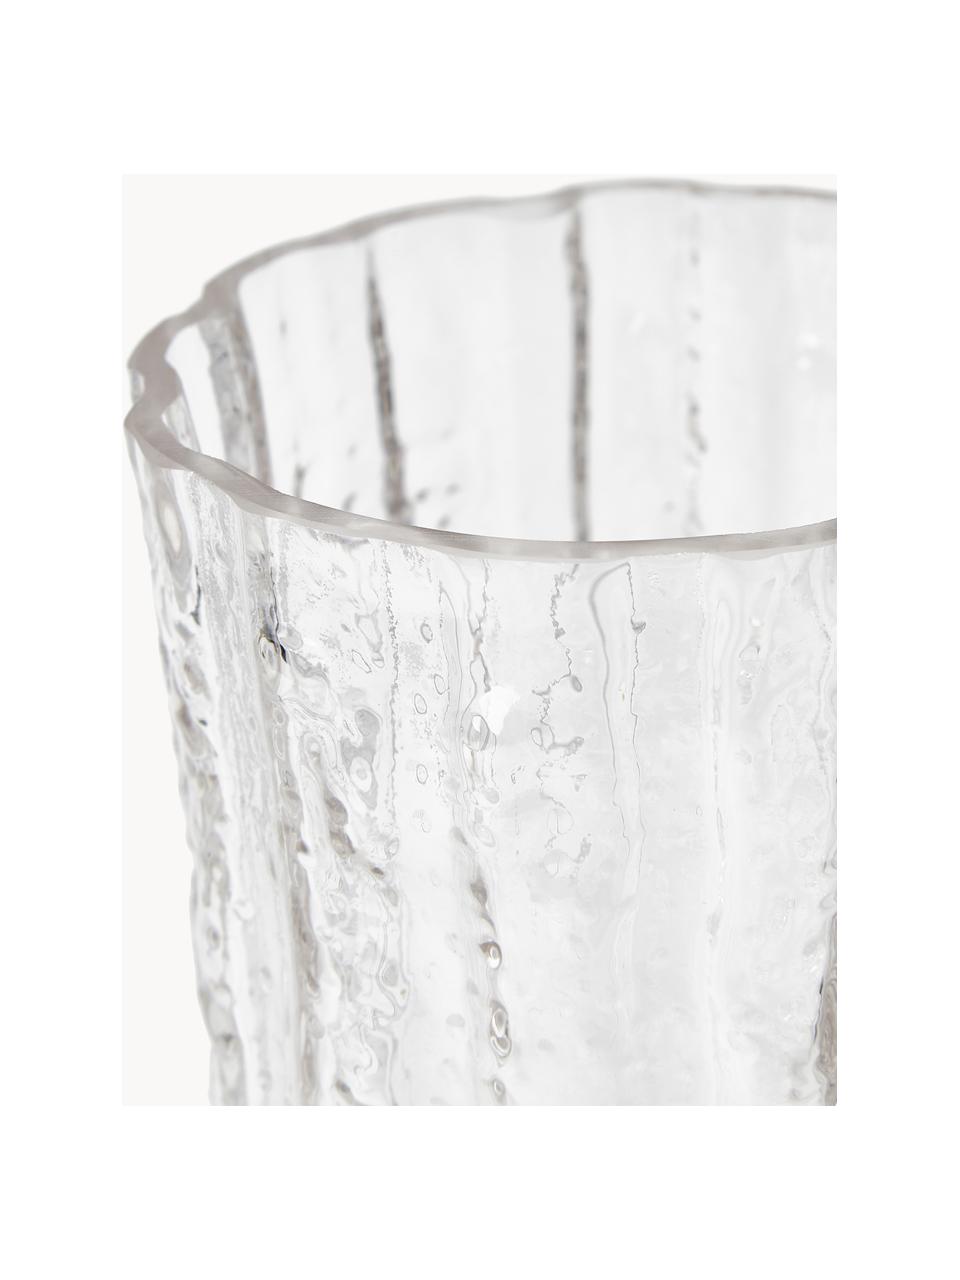 Glas-Vase Elli mit strukturierter Oberfläche, Glas, Transparent, Ø 13 x H 30 cm